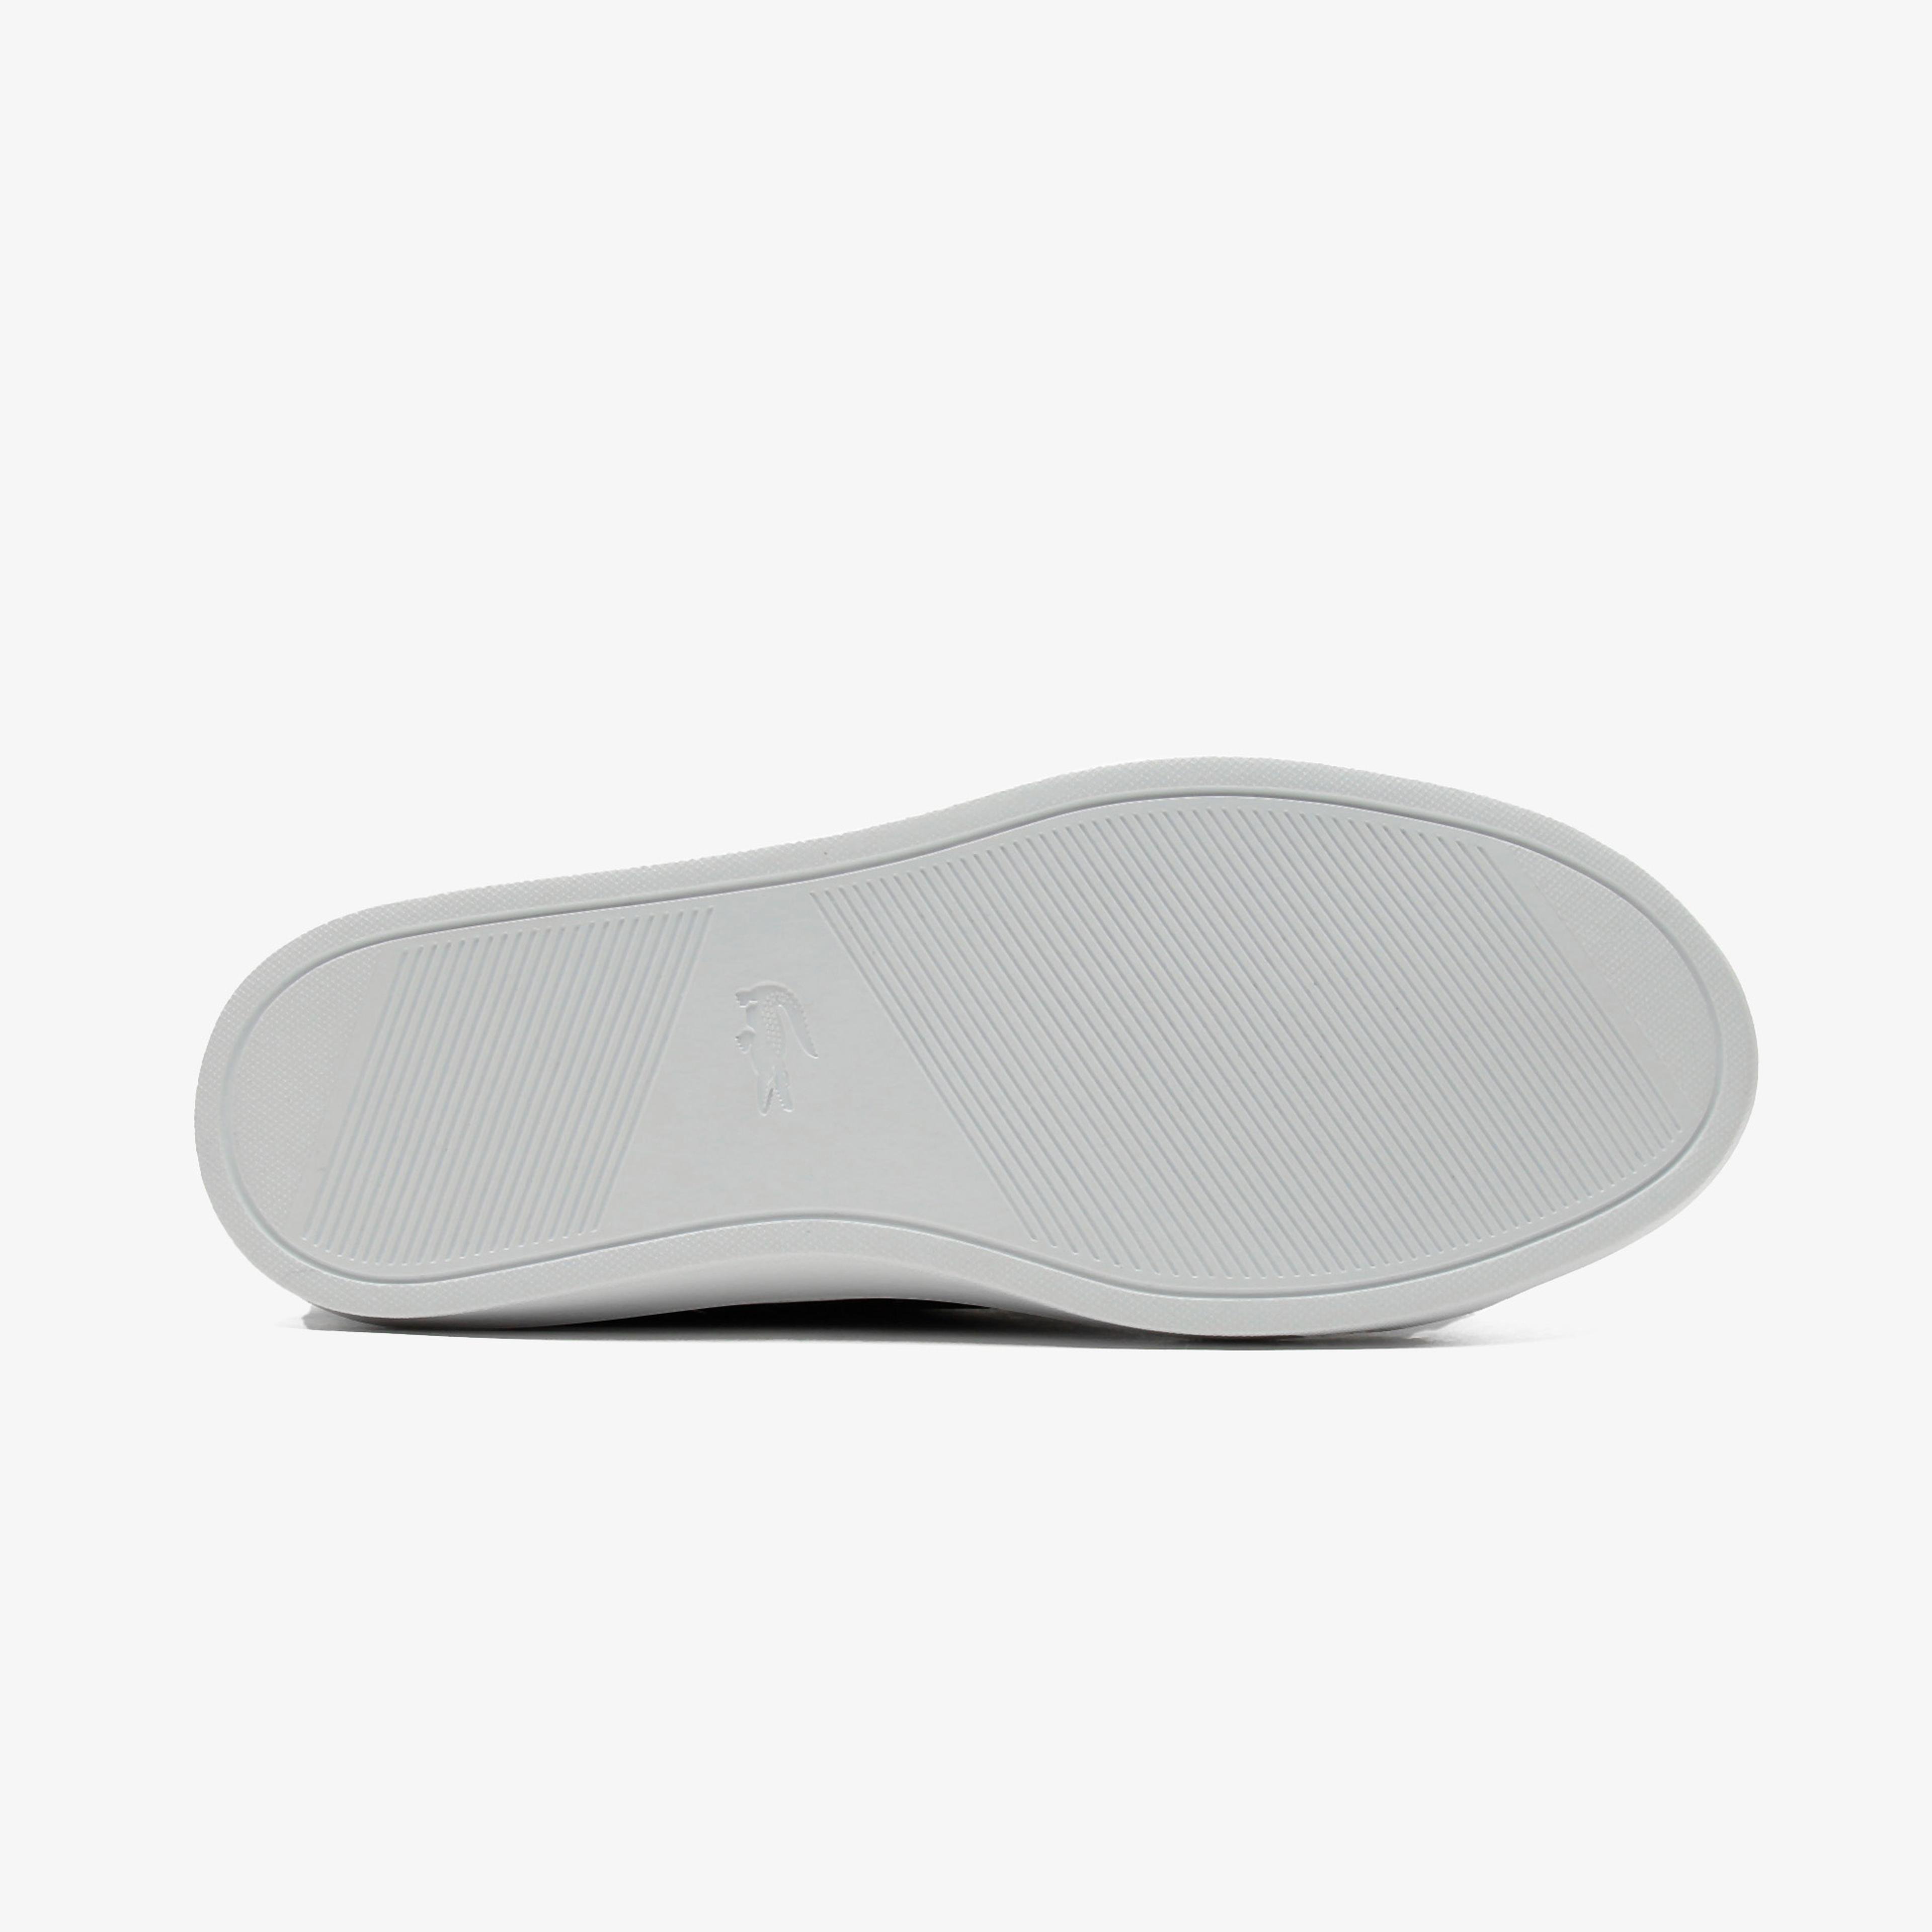 Lacoste La Piquee Mid 0721 1 Cma Erkek Lacivert - Beyaz Spor Ayakkabı